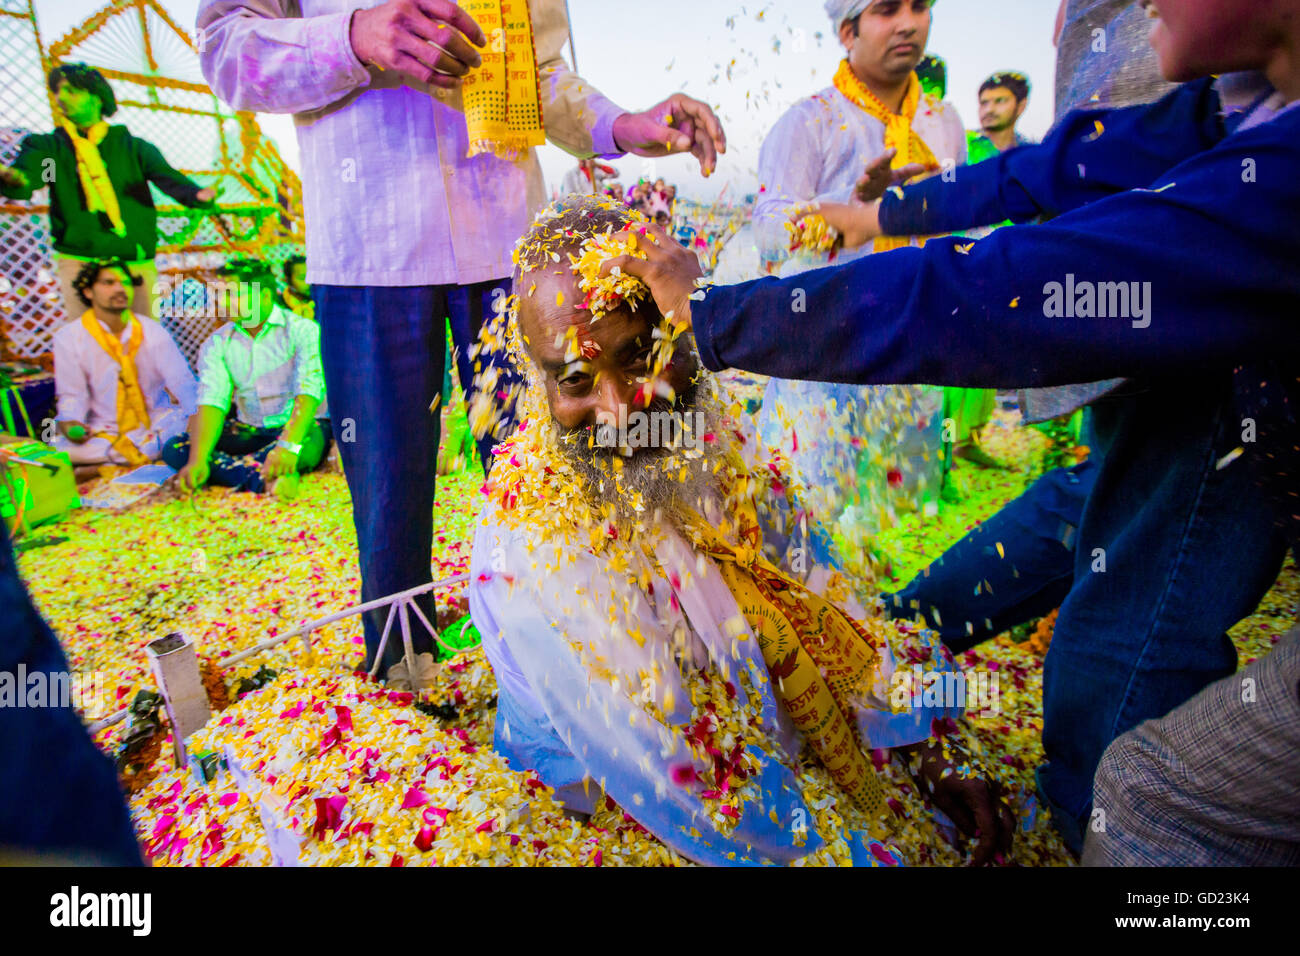 Guru de pétales de fleur se jette sur son visage pendant le Festival Holi Fleur, Vrindavan, Uttar Pradesh, Inde, Asie Banque D'Images